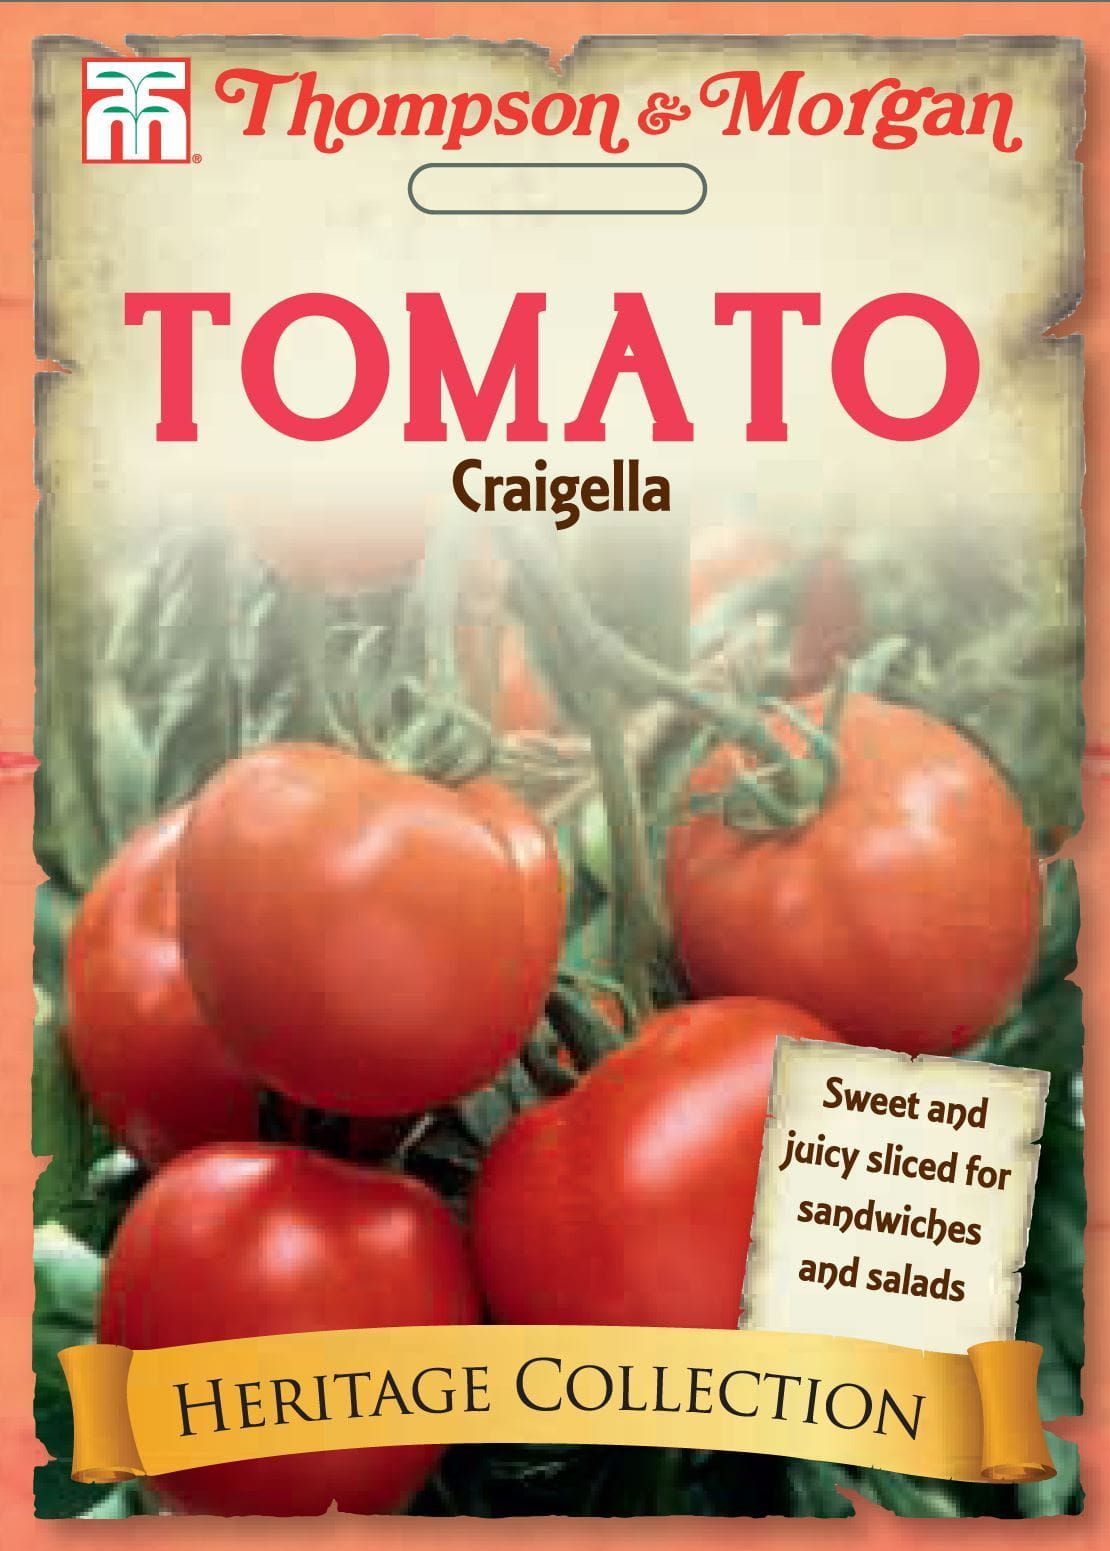 Thompson & Morgan Heritage Vegetables Tomato Craigella 25 Seed